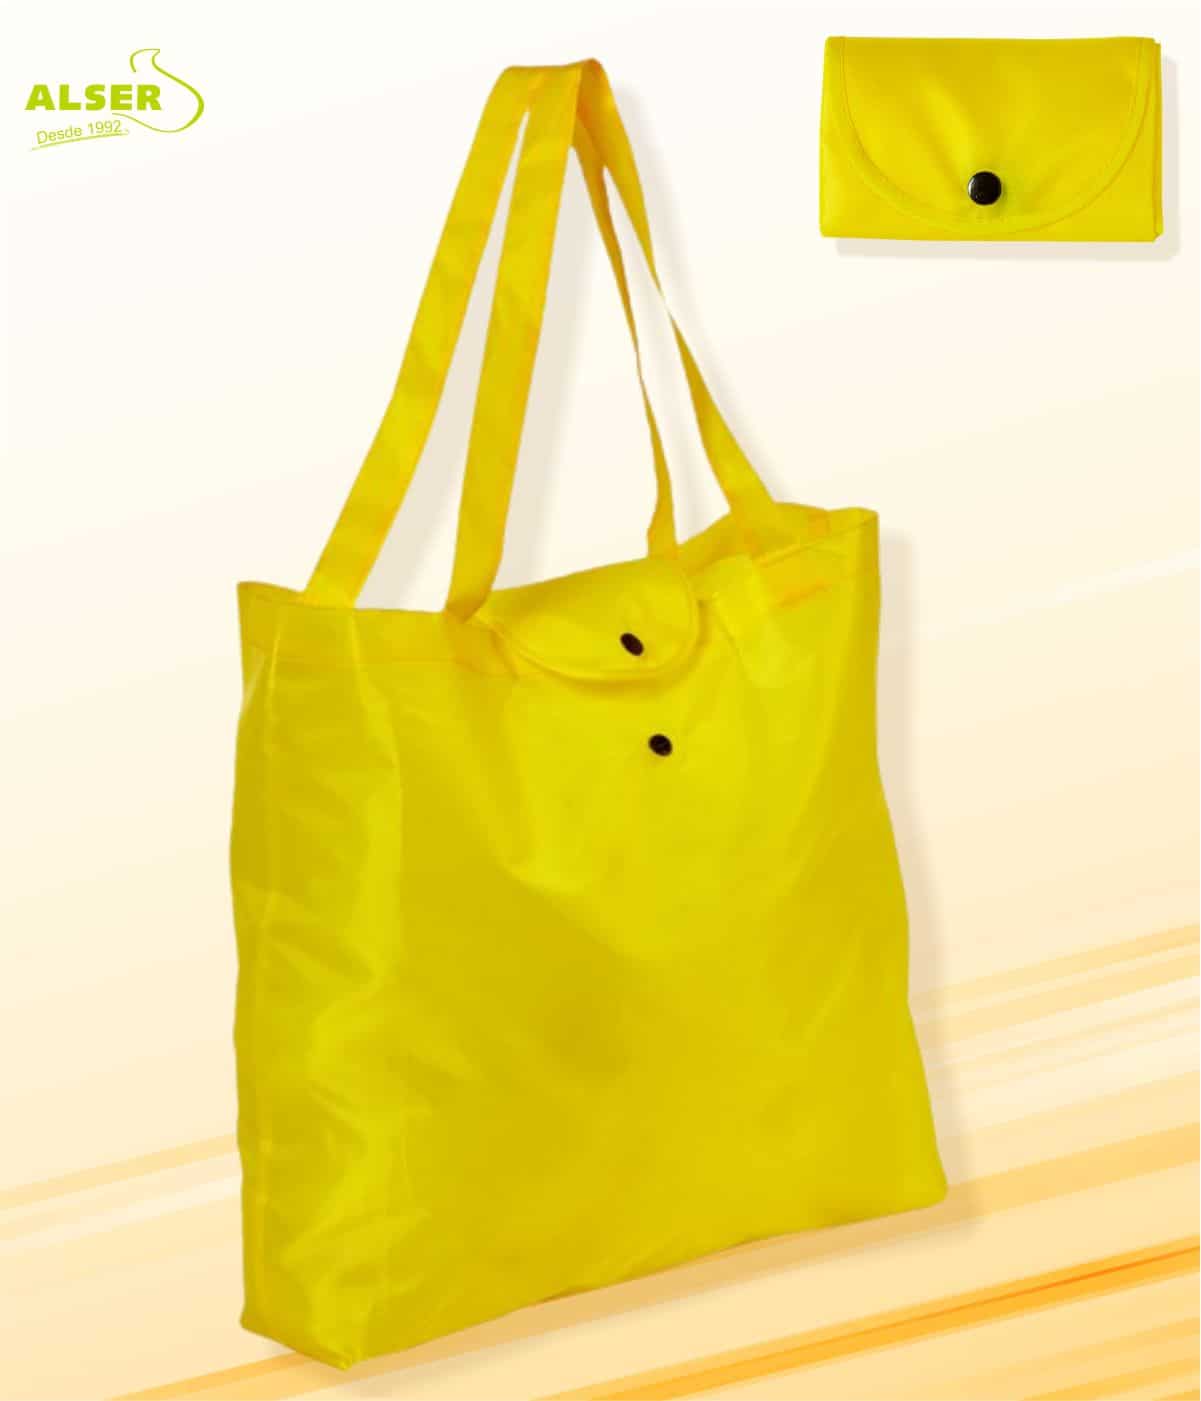 LOMOS cesta de compra shoppingbag bolsa para compras,tamaño L,en campana azul/amarillo 